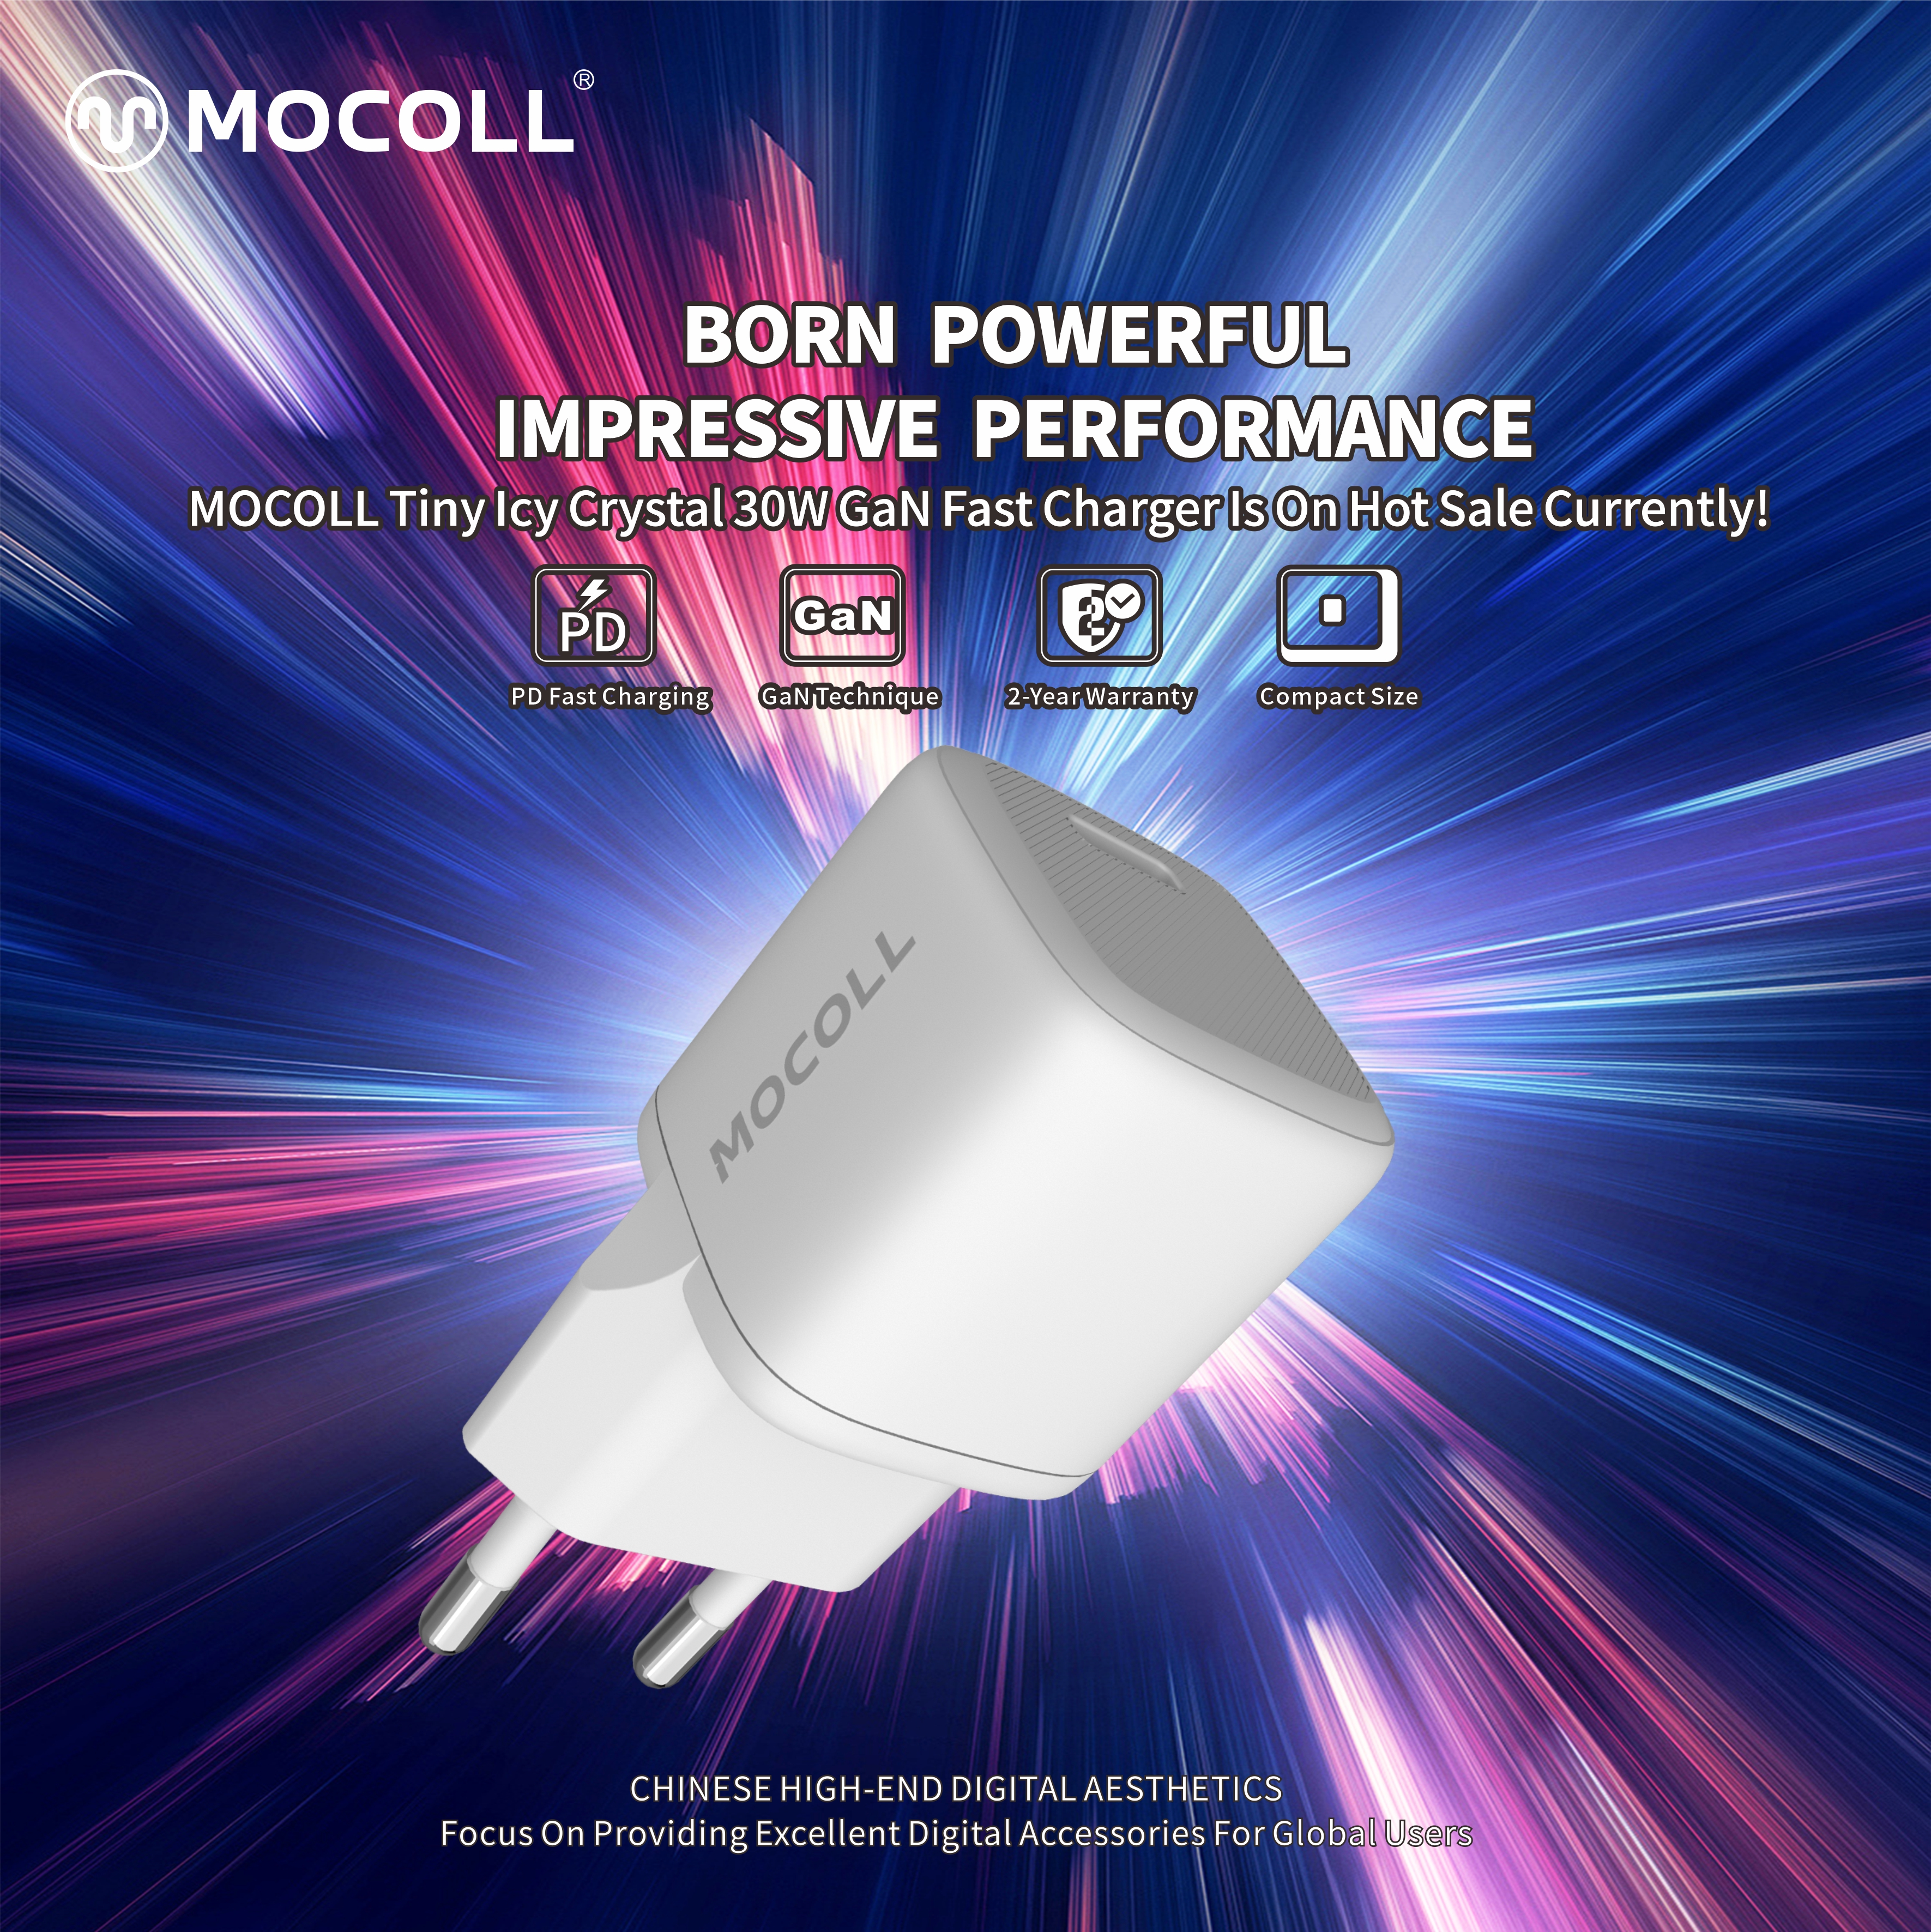 Nacido poderoso | ¡Se lanzan los nuevos productos de MOCOLL!